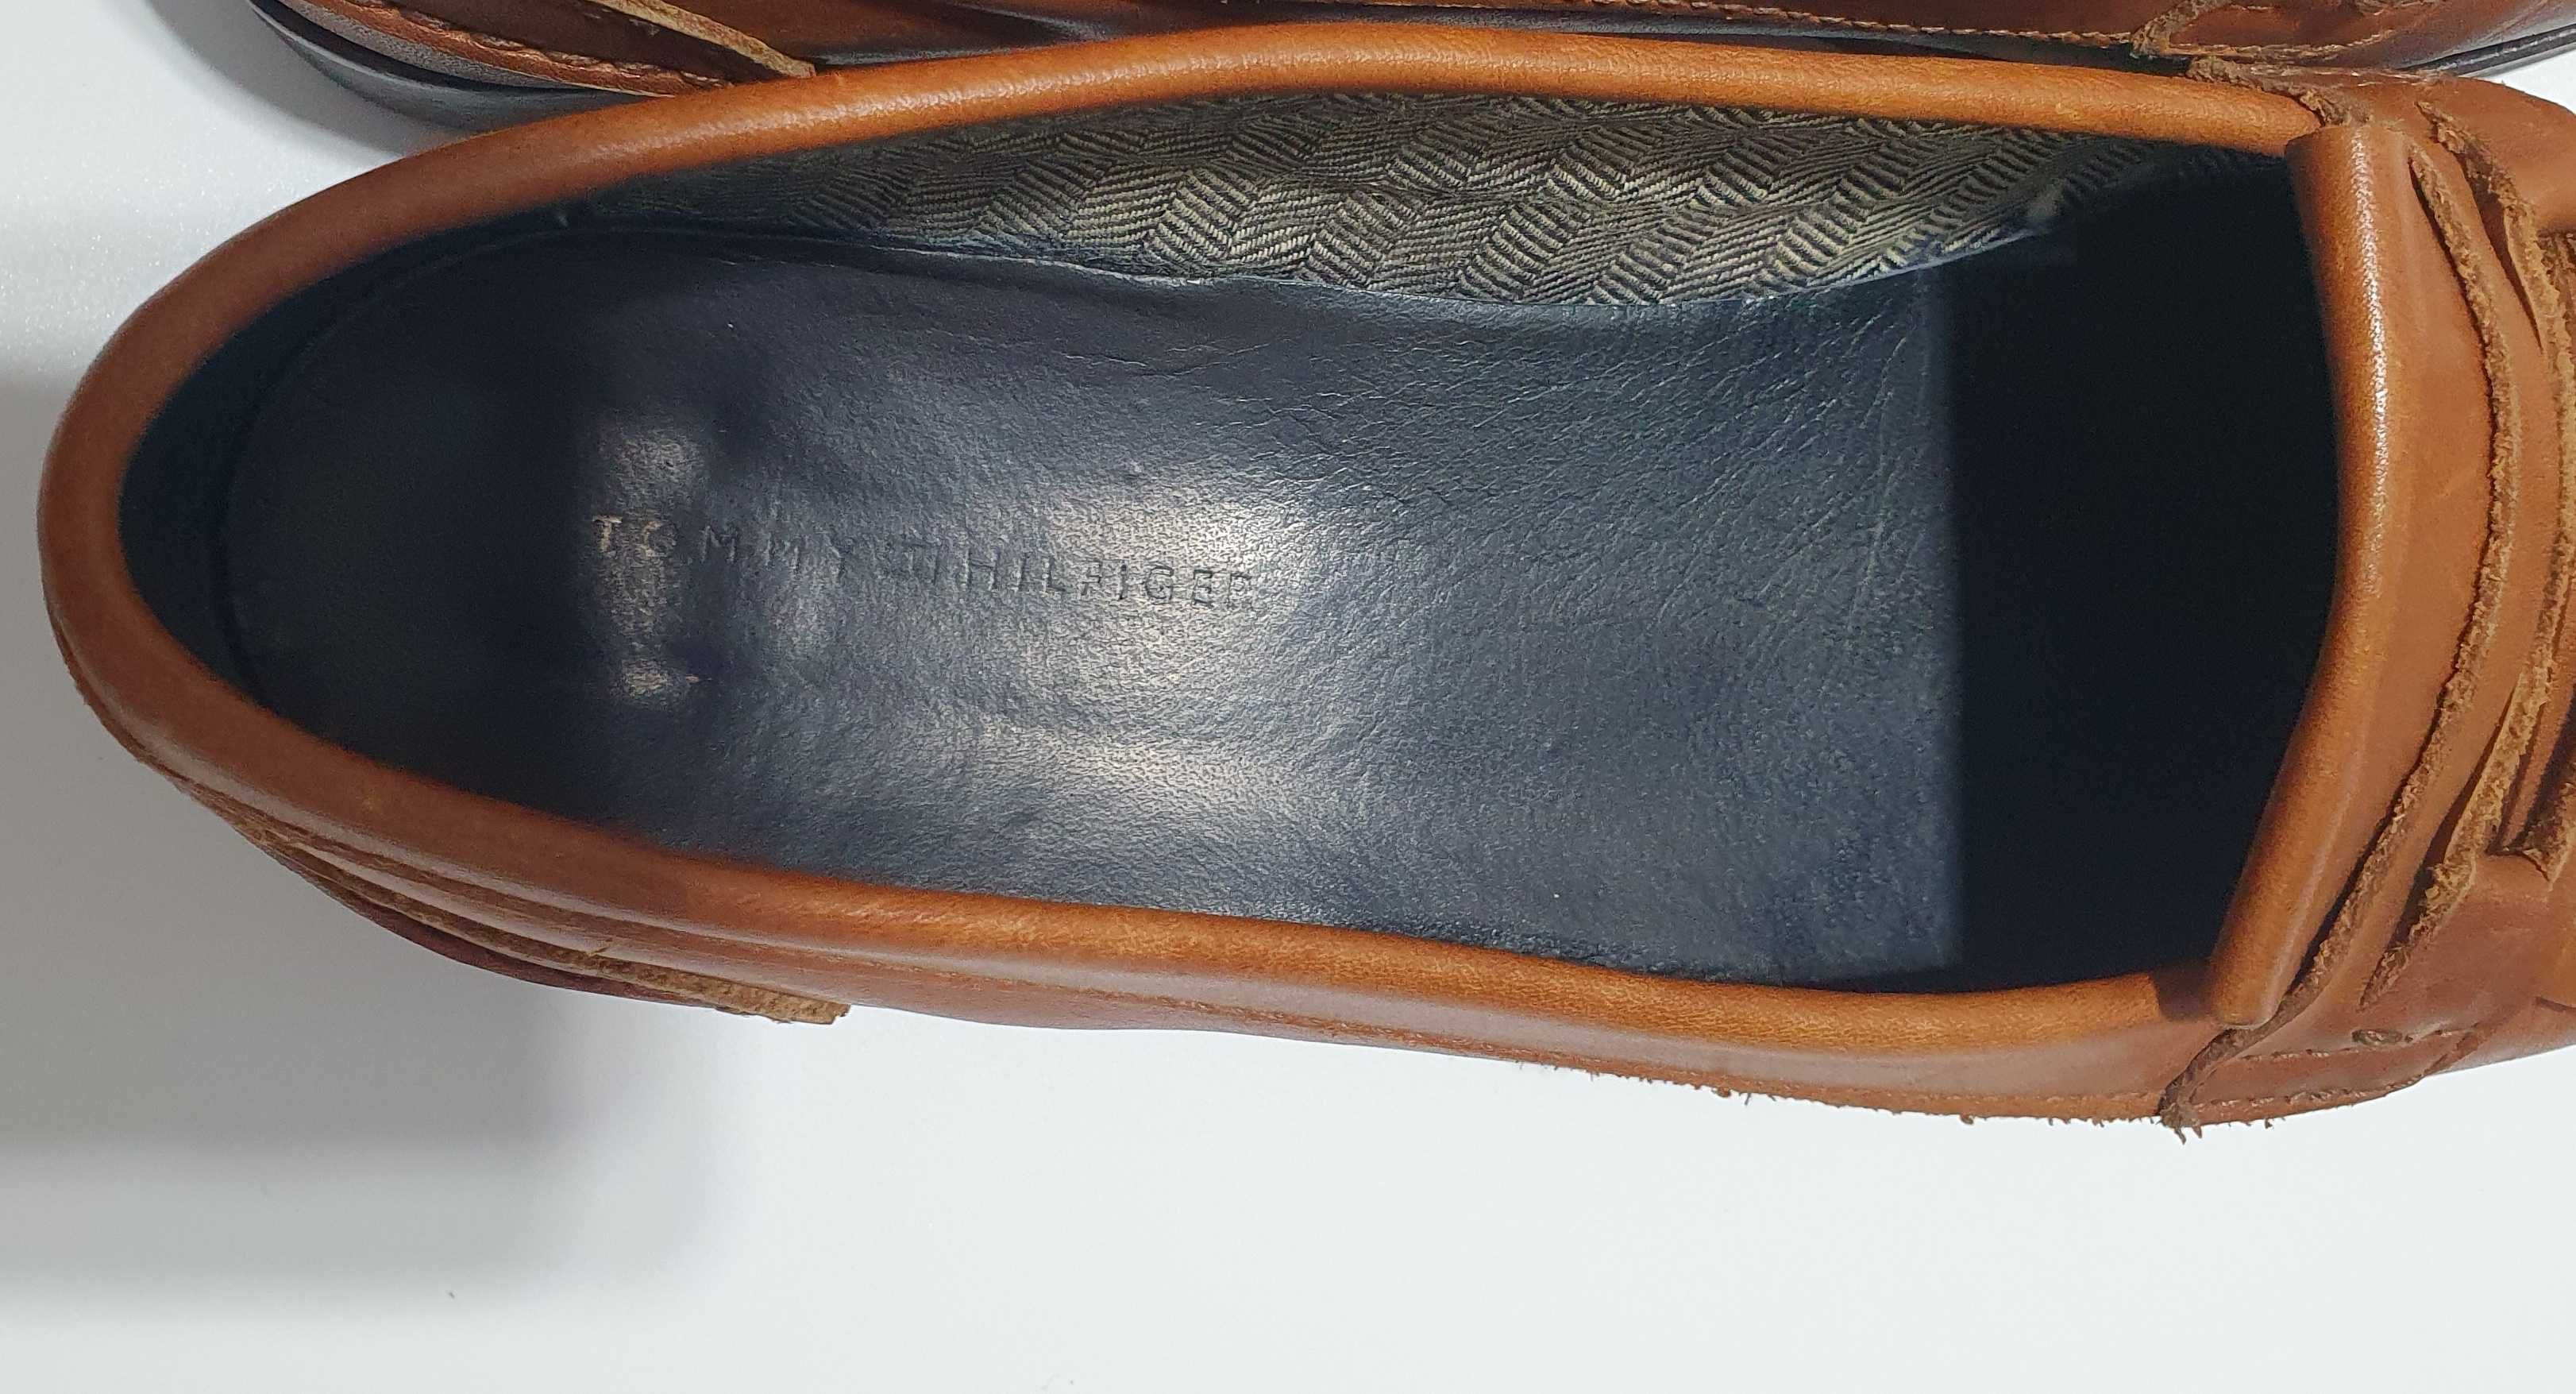 Pantofi de piele dama Tommy Hilfiger marimea 38 interior 24 cm